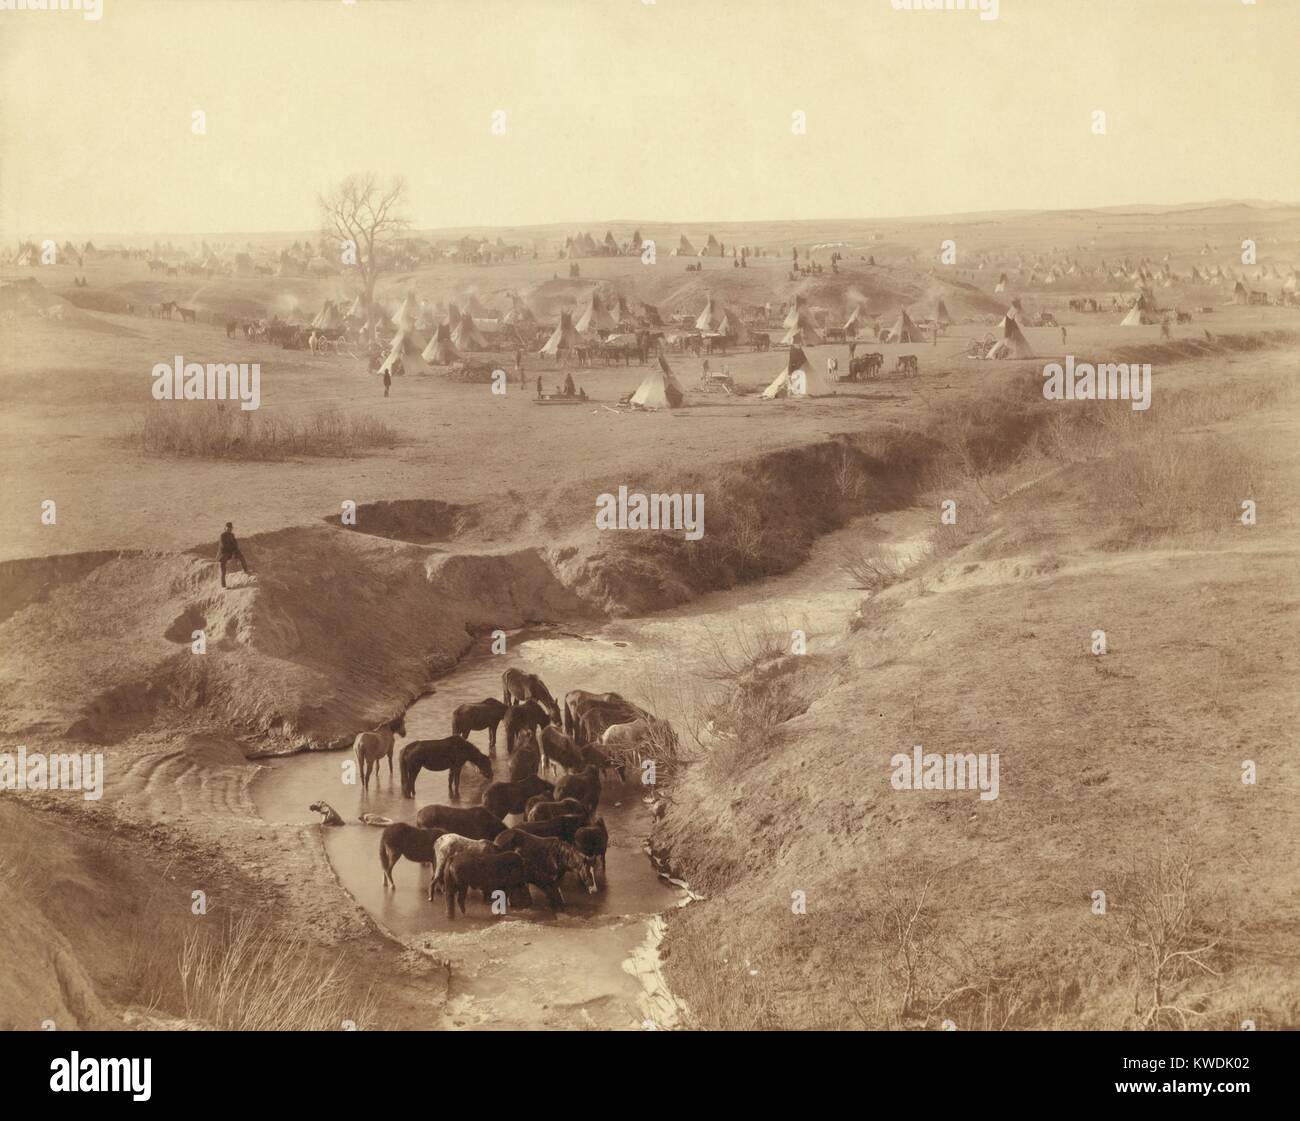 Brule Sioux Camp von 2.000 nach dem Wounded Knee Massacre, auf Pine Ridge Indian Reservation. Dezember 29, 1890, Krieger aus diesem Lager weg zum Sound der Waffen. Sie griffen auf die US-Soldaten, sondern wandte sich wieder unter Feuer, mit einem Krieger getötet. Nach dem Massaker, ihr Lager wurde von der US-Armee umgeben, während 14.01.1891. Im Vordergrund die Pferde trinken in White Clay Creek Wasserloch. Foto von John Grabill, Jan. 1891 (BSLOC 2017 18 12) Stockfoto